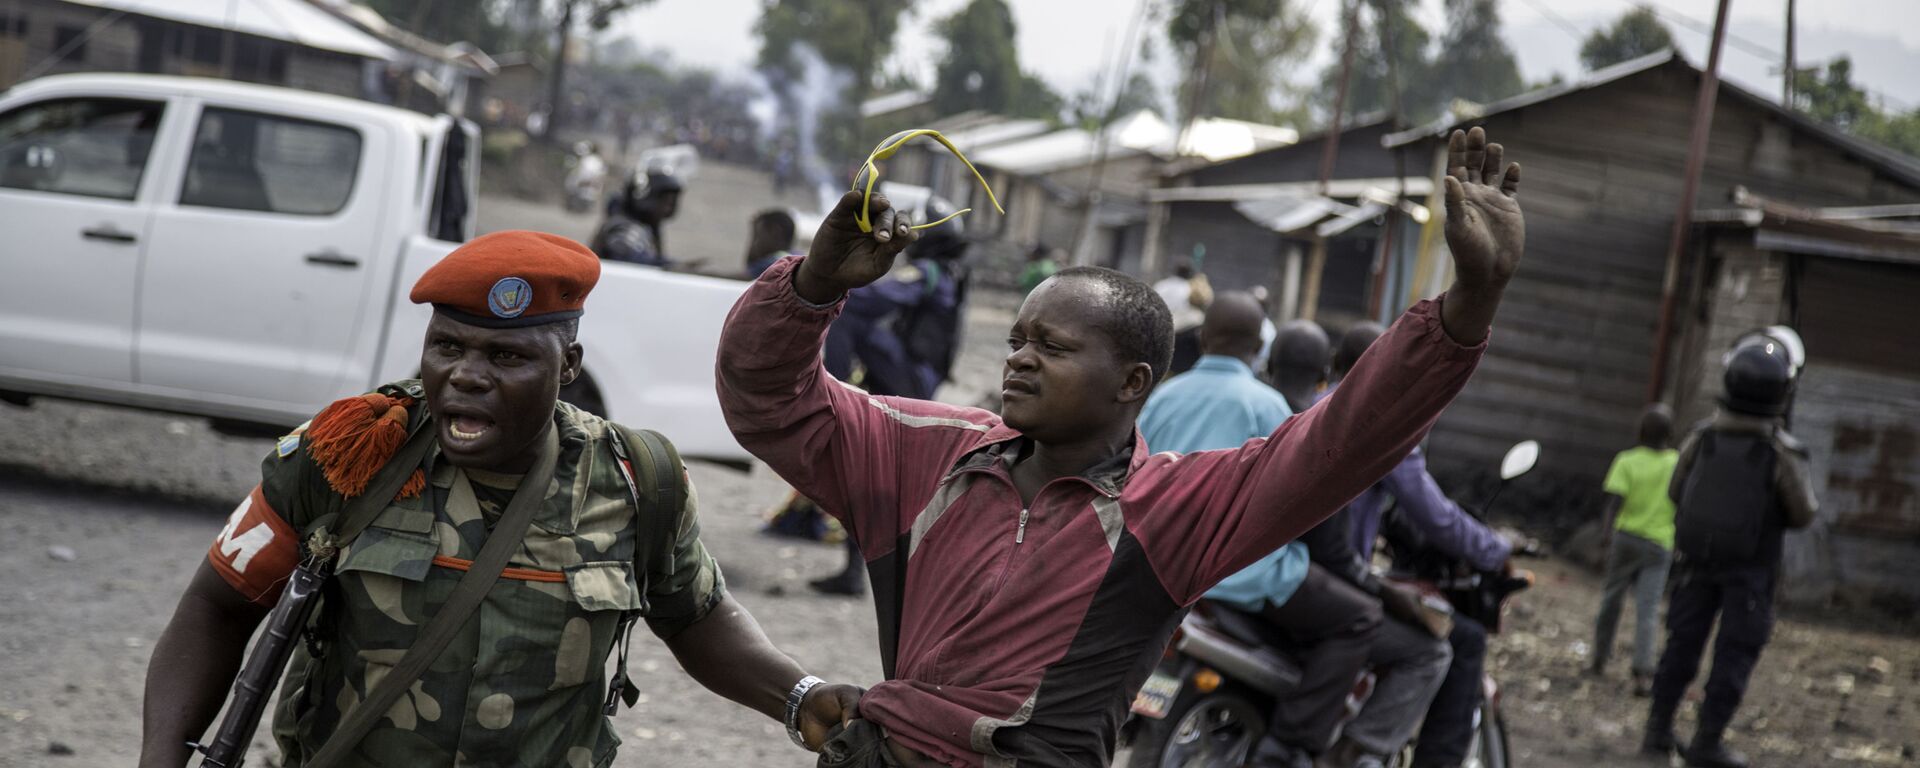 ضابط يلقي القبض على رجل حاول إغلاق الطريق بالحجارة، في حي ماجينغو في غوما، شرق جمهورية الكونغو الديمقراطية، في 19 ديسمبر/ كانون الأول عام 2016، - سبوتنيك عربي, 1920, 26.05.2021